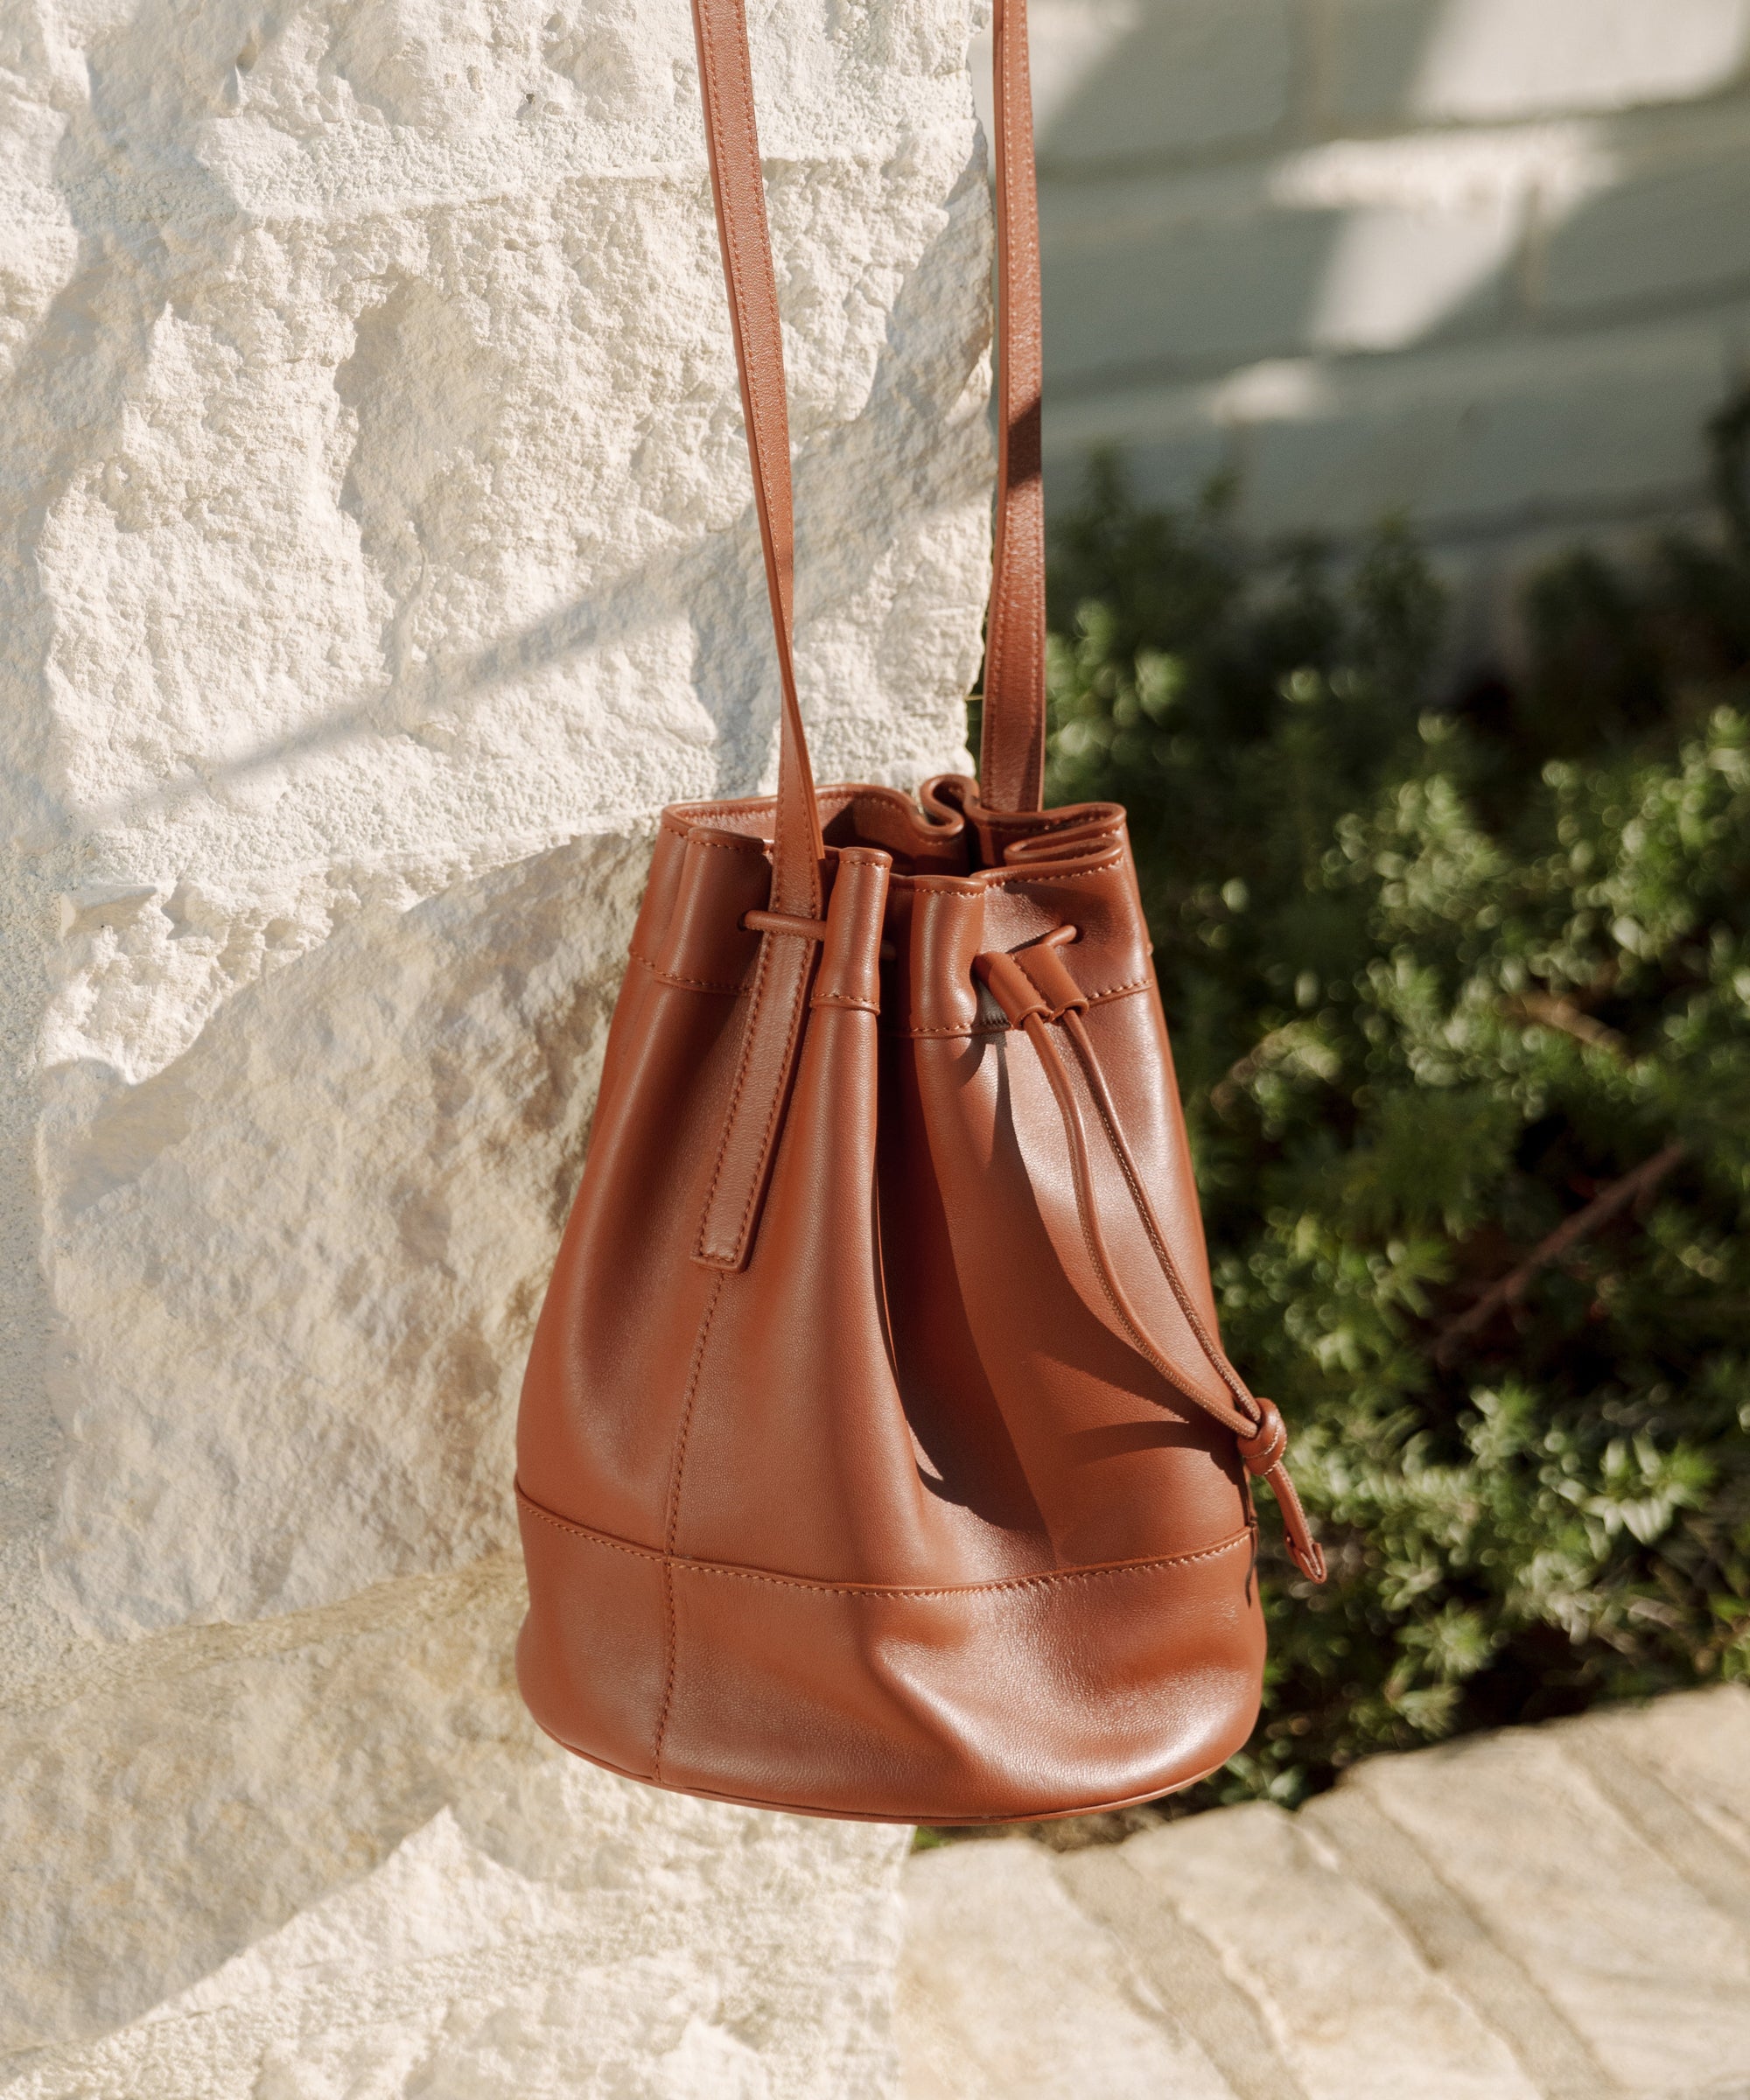 Jenni Kayne Mini Leather Drawstring Bag